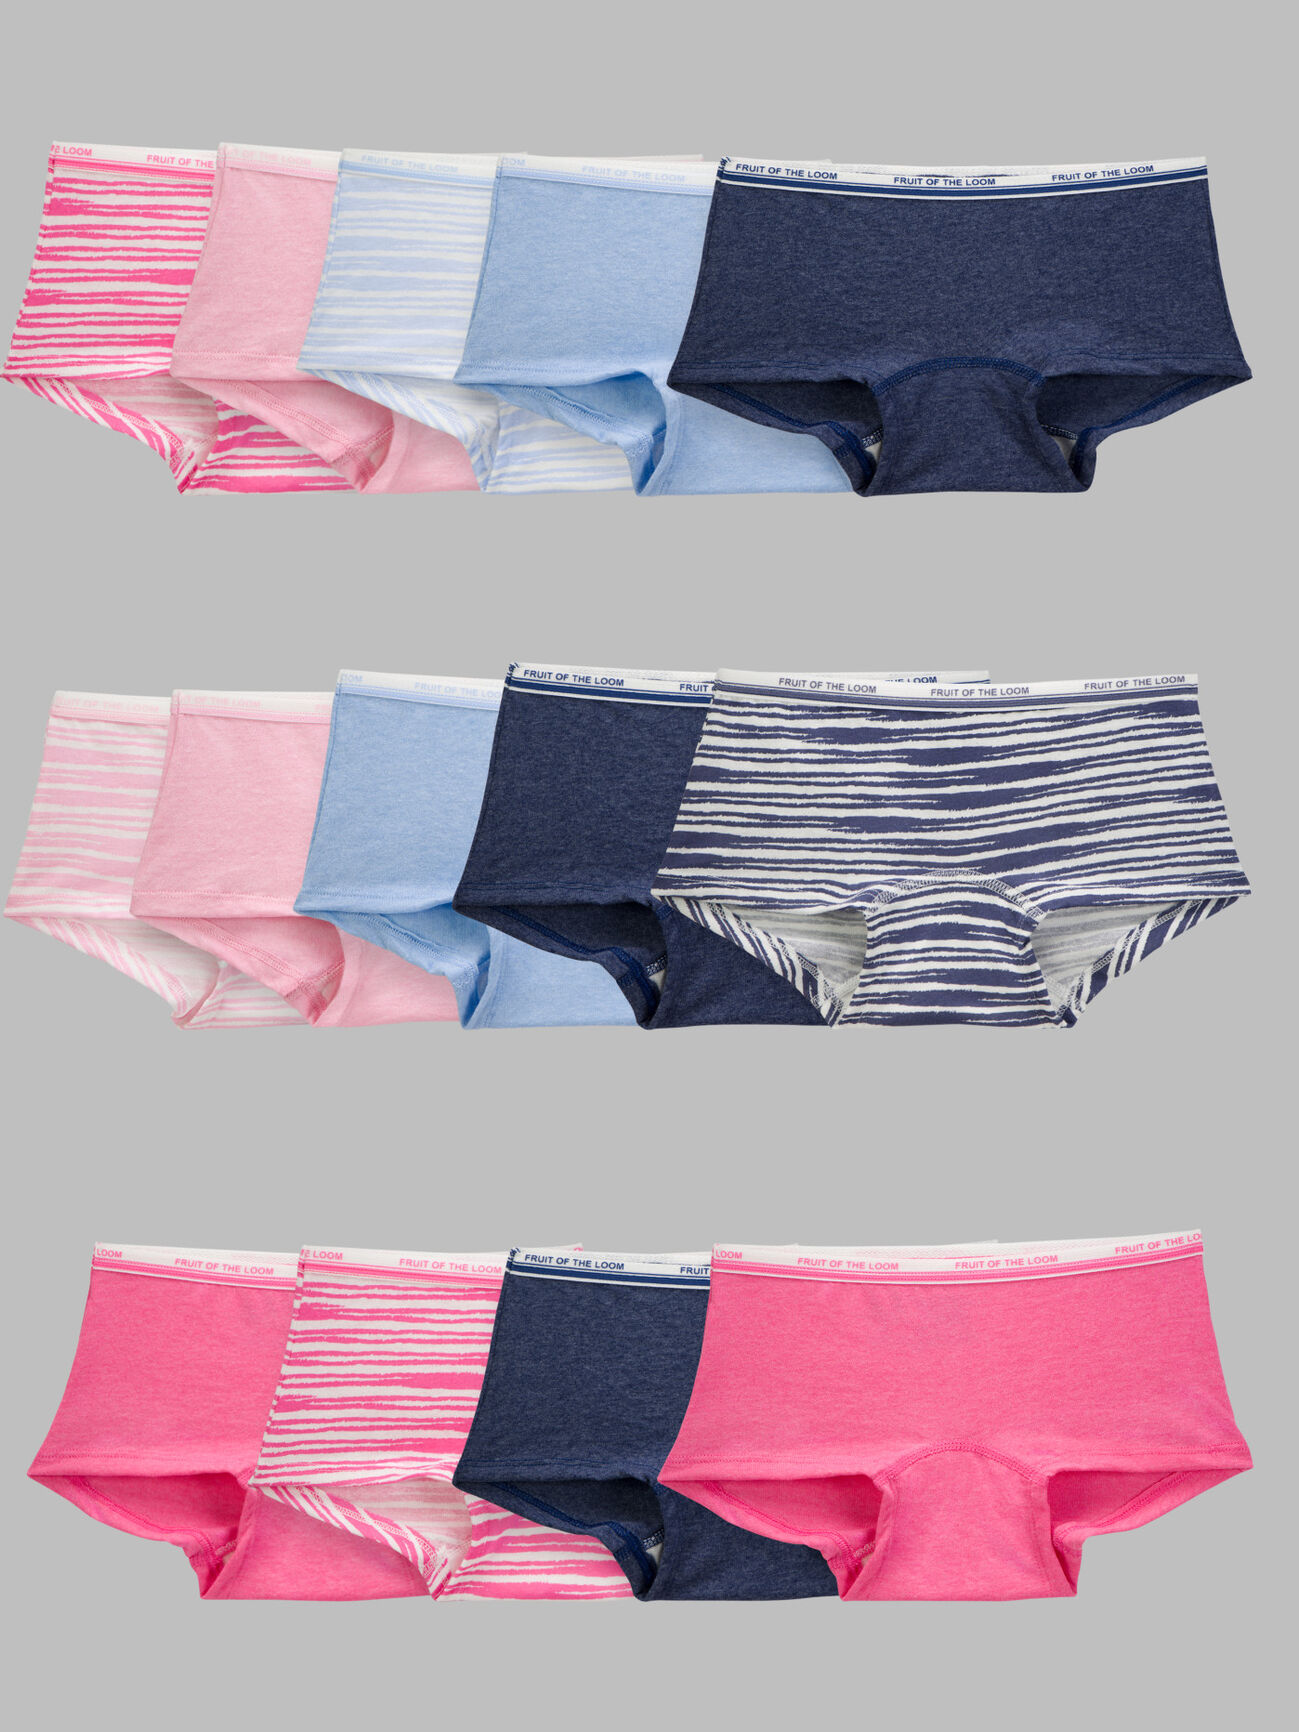 Women's Boyshorts Underwear - Shop Cotton Boyshort Underwear for